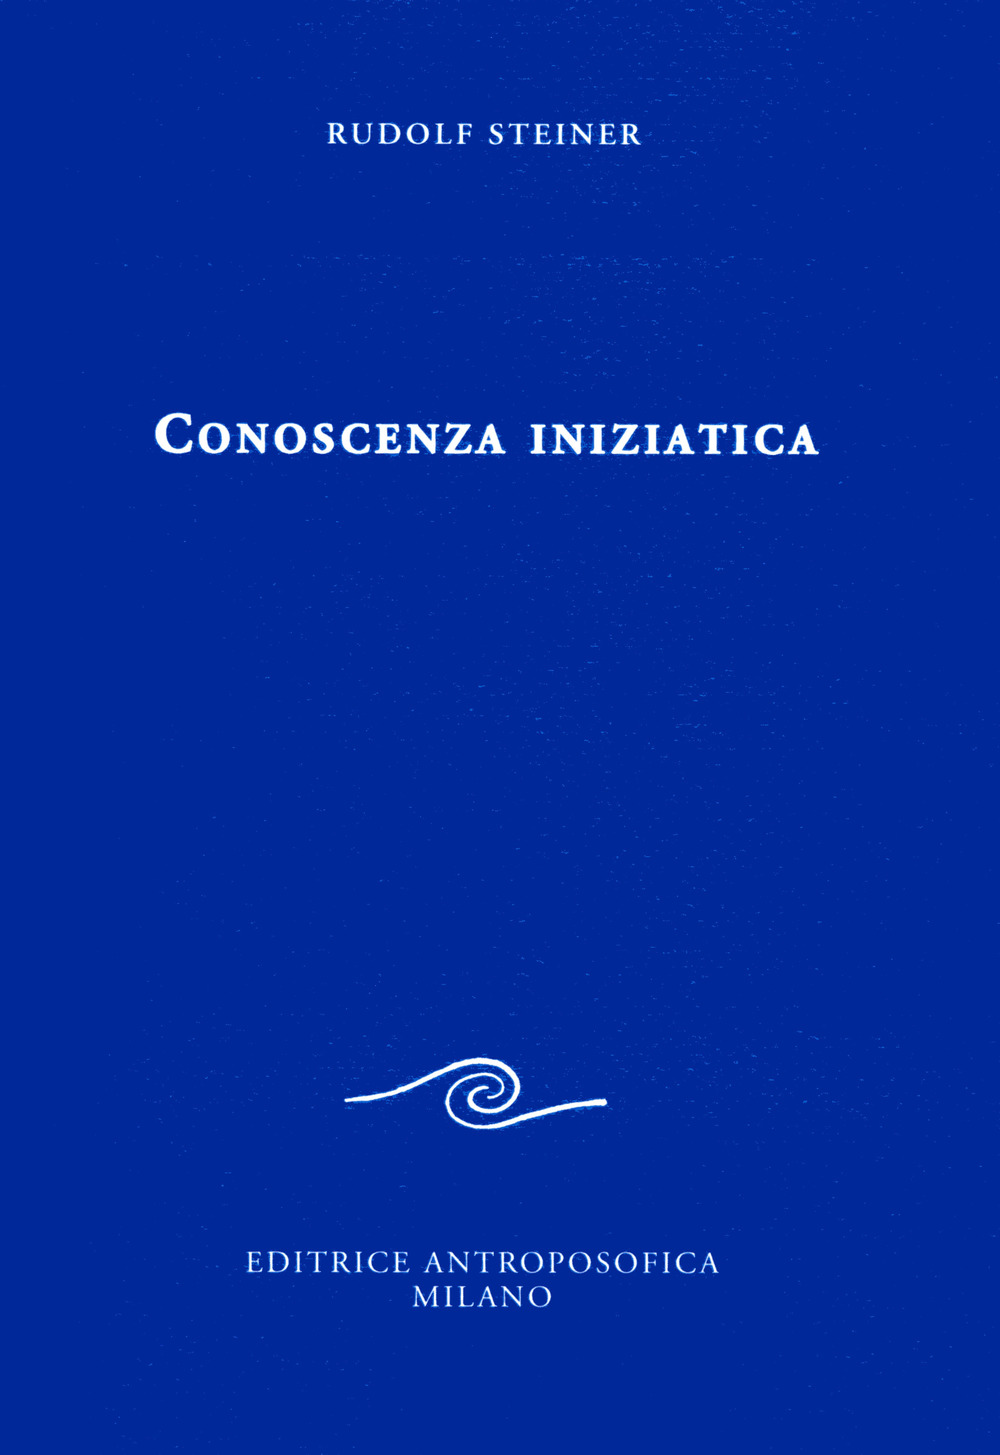 Image of Conoscenza iniziatica